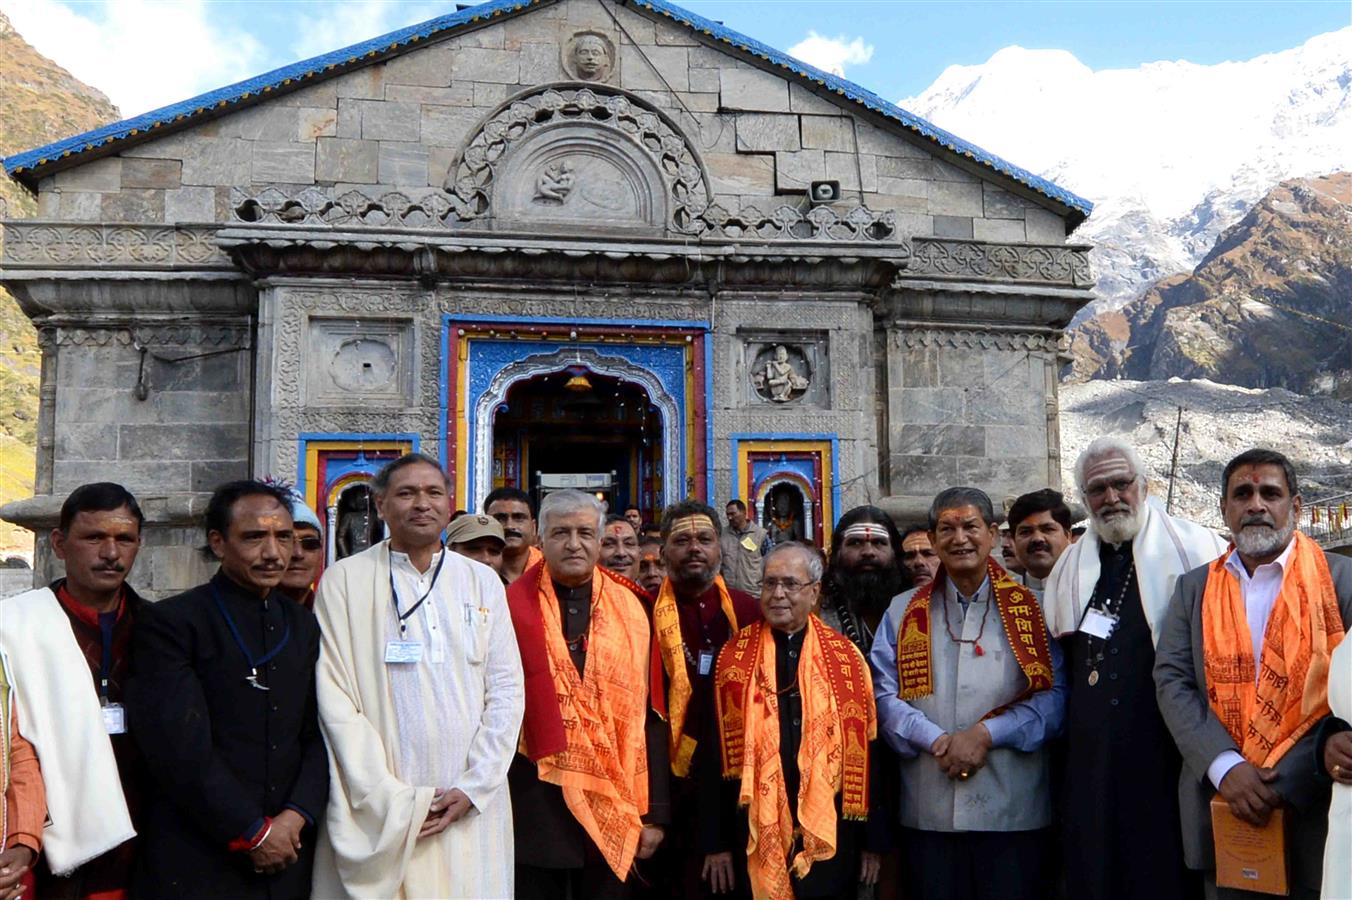 The President of India, Shri Pranab Mukherjee along with the Governor of Uttarakhand, Dr. K K Paul and the Chief Minister of Uttarakhand, Shri Harish Rawat during visit to Shri Kedarnath Temple at Kedarnath in Uttarakhand on September 28, 2016.